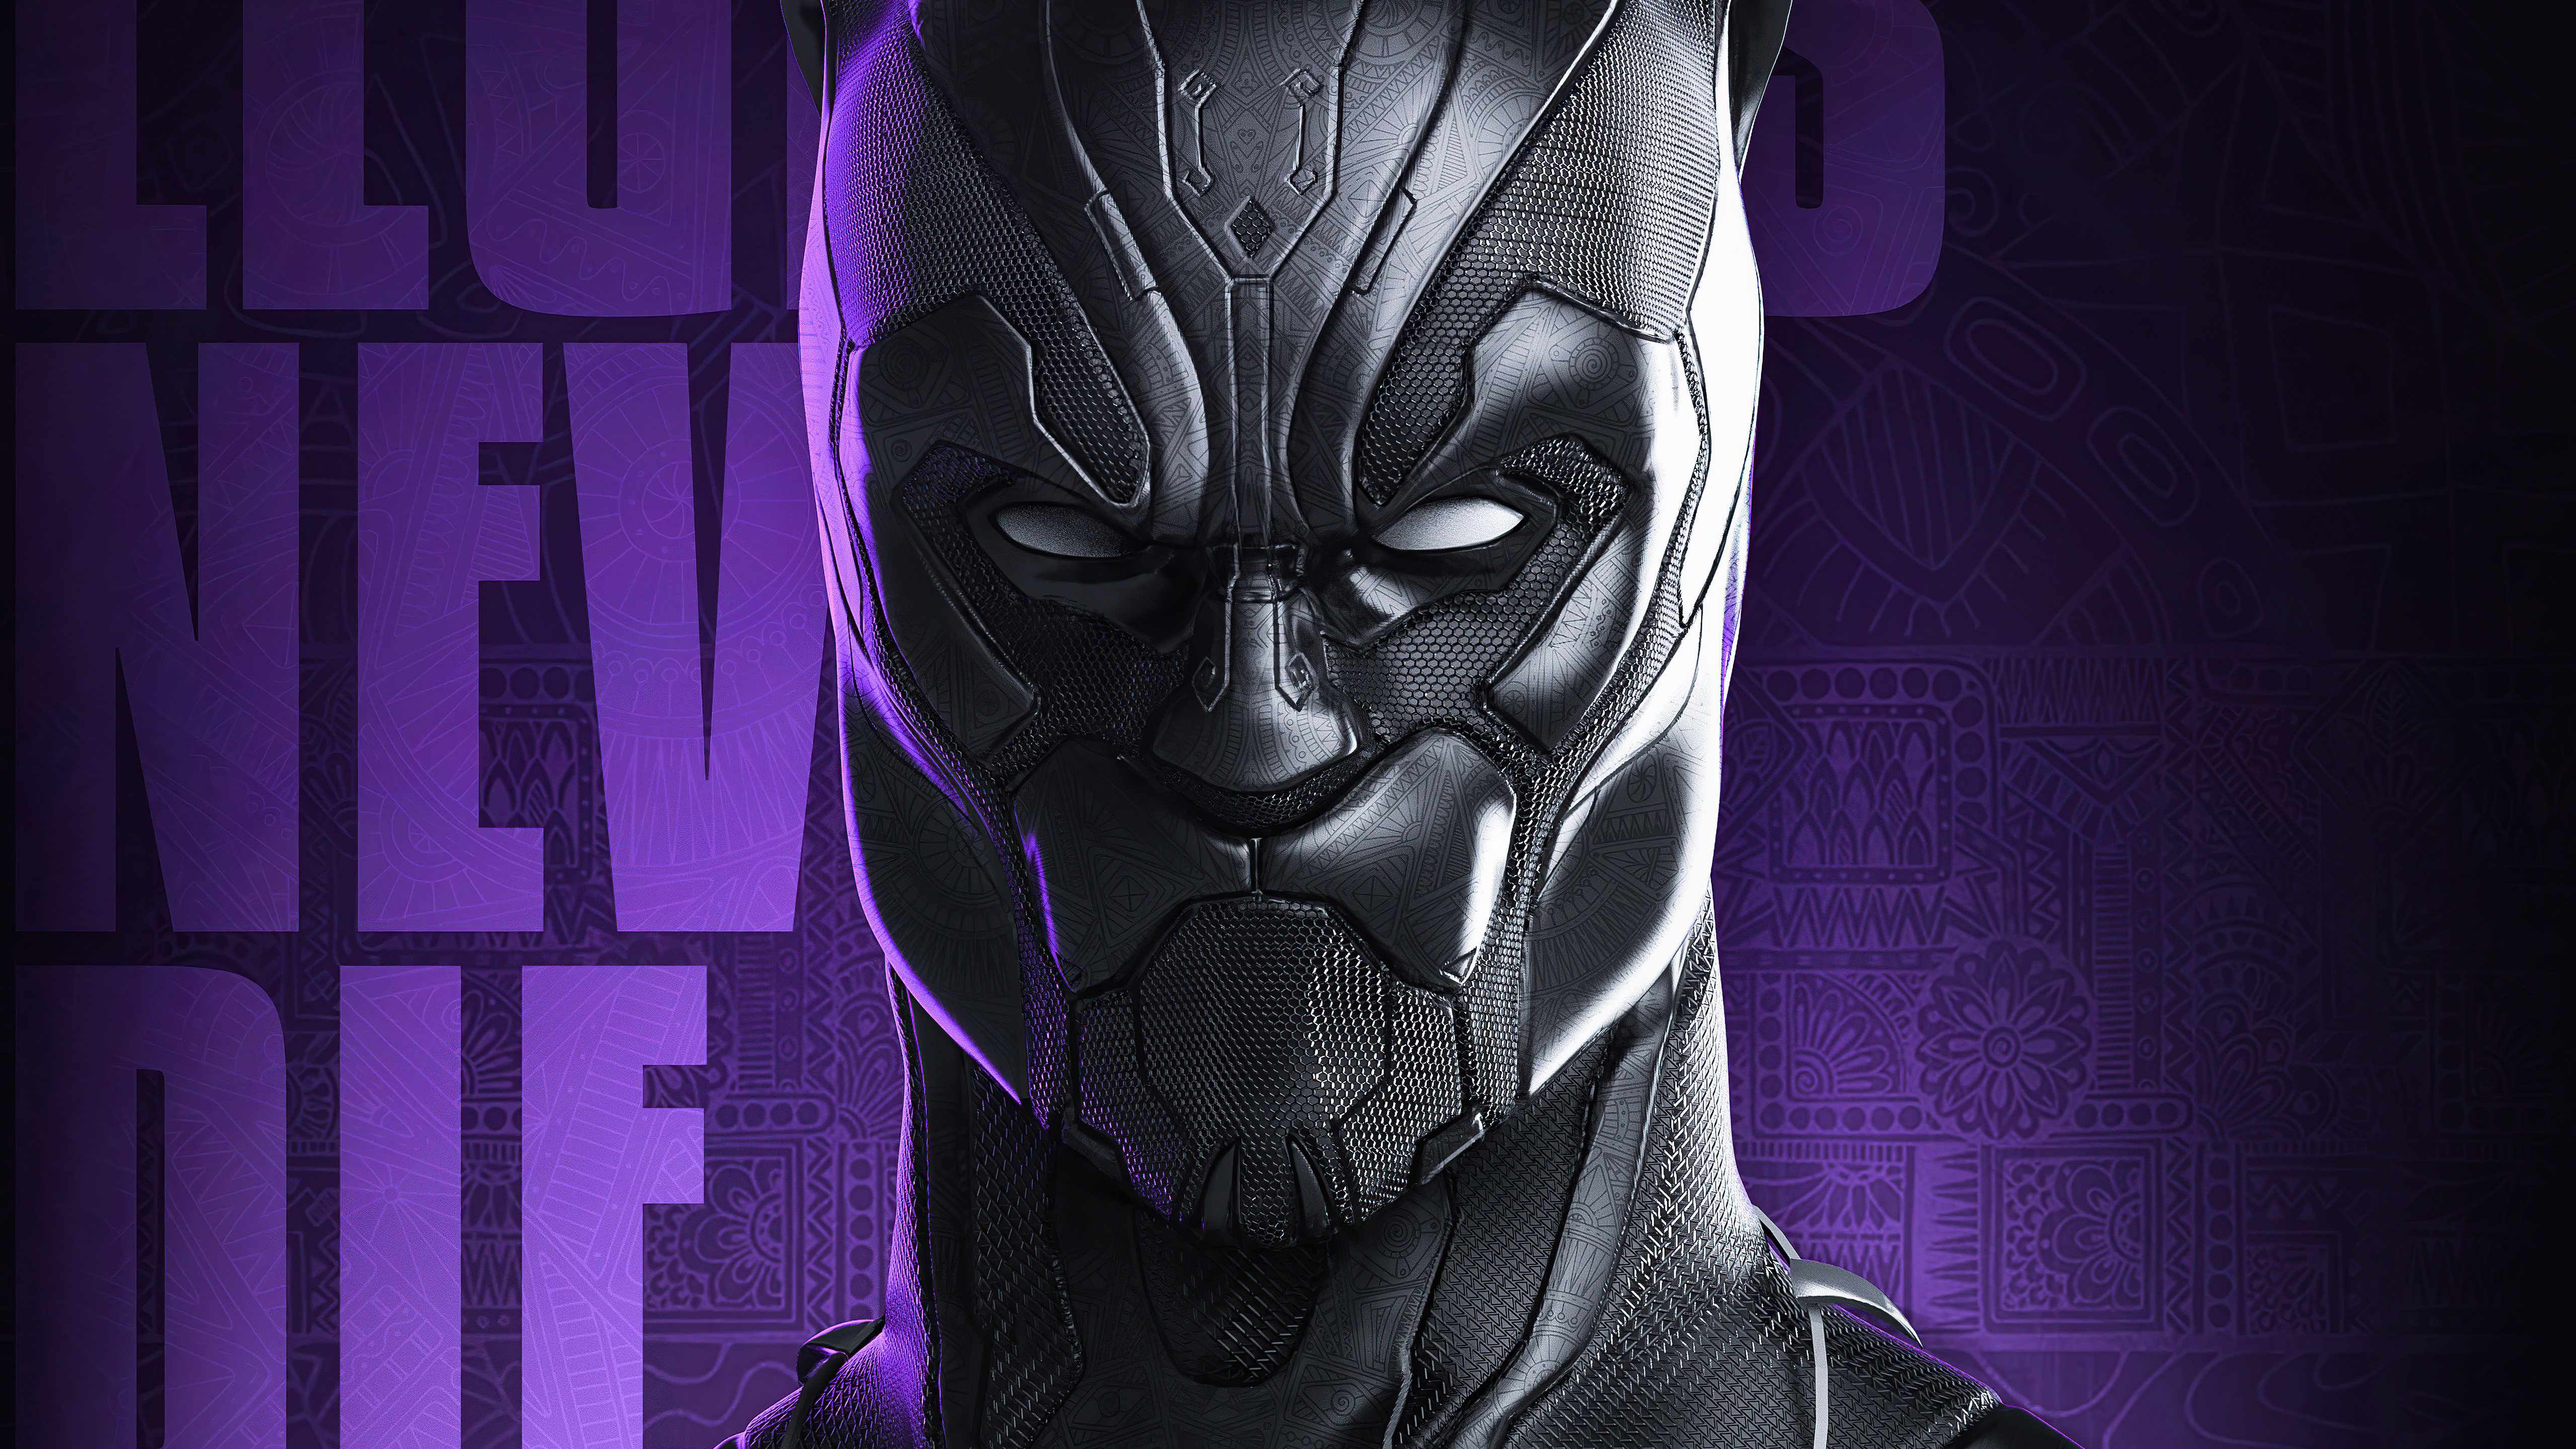 Comics Black Panther 4k Ultra HD Wallpaper by Abrar Khan